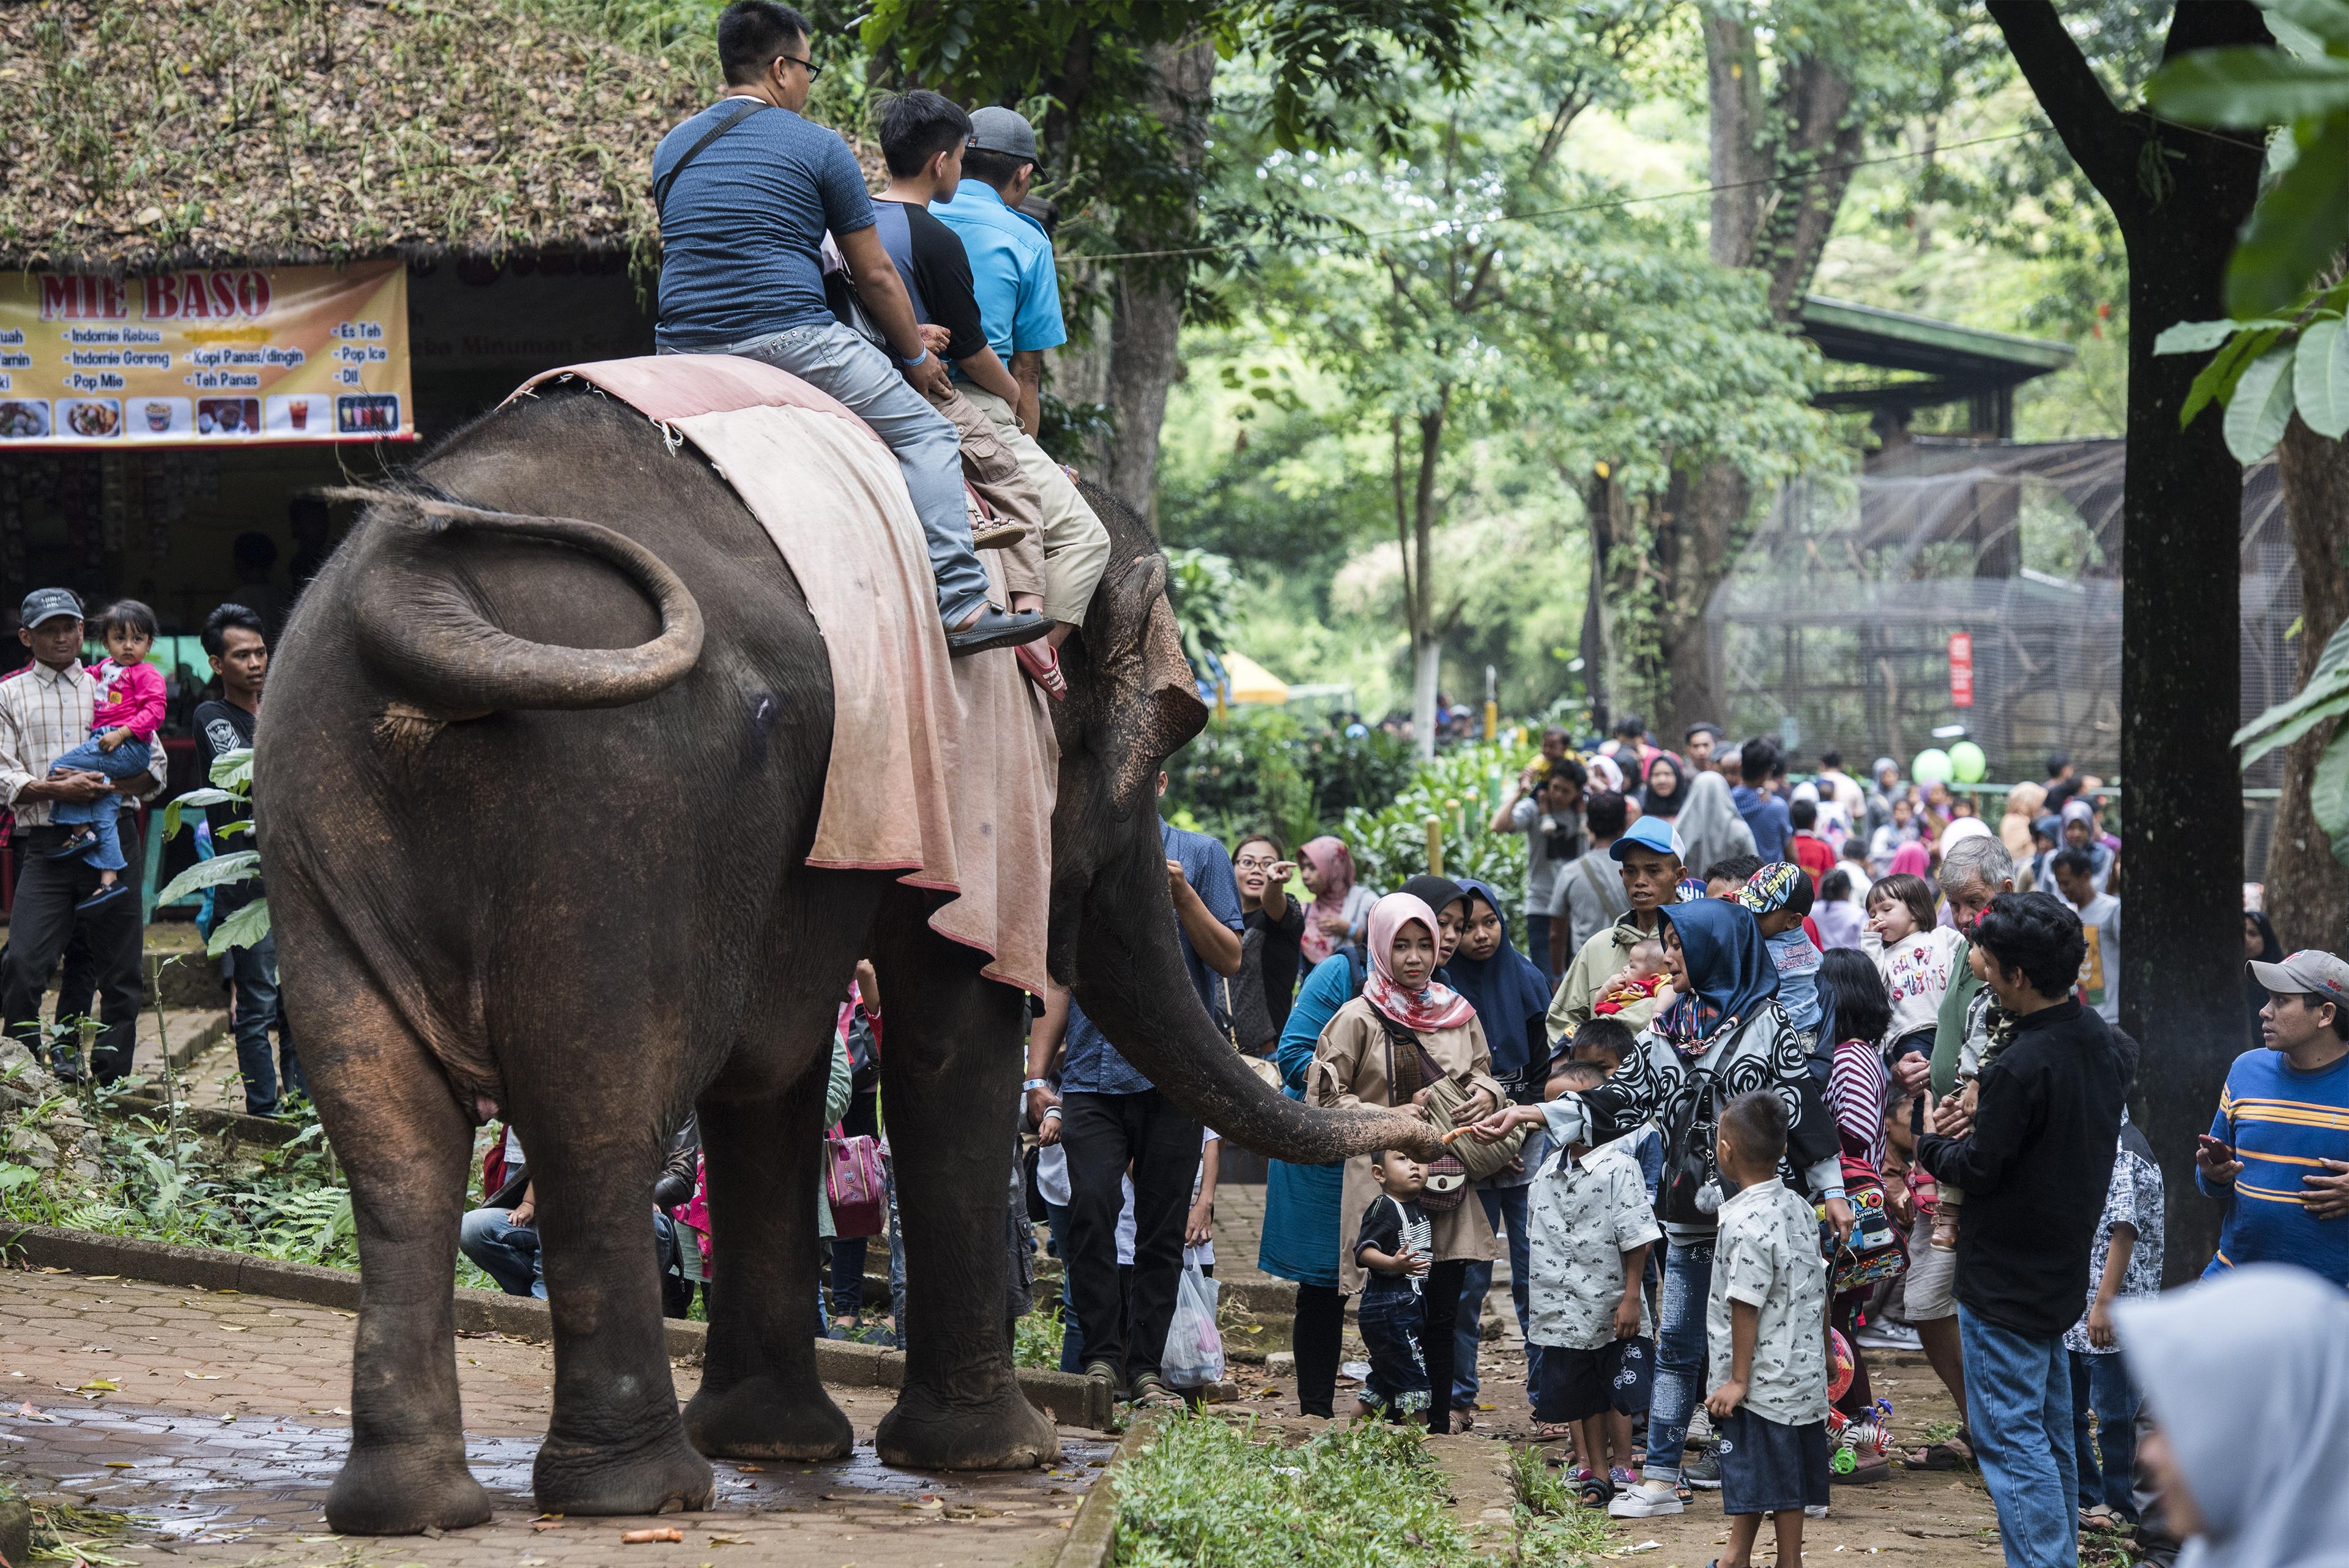       Pengunjung memberi makan gajah saat libur lebaran di Kebun Binatang Bandung (Bandung Zoo), Ban